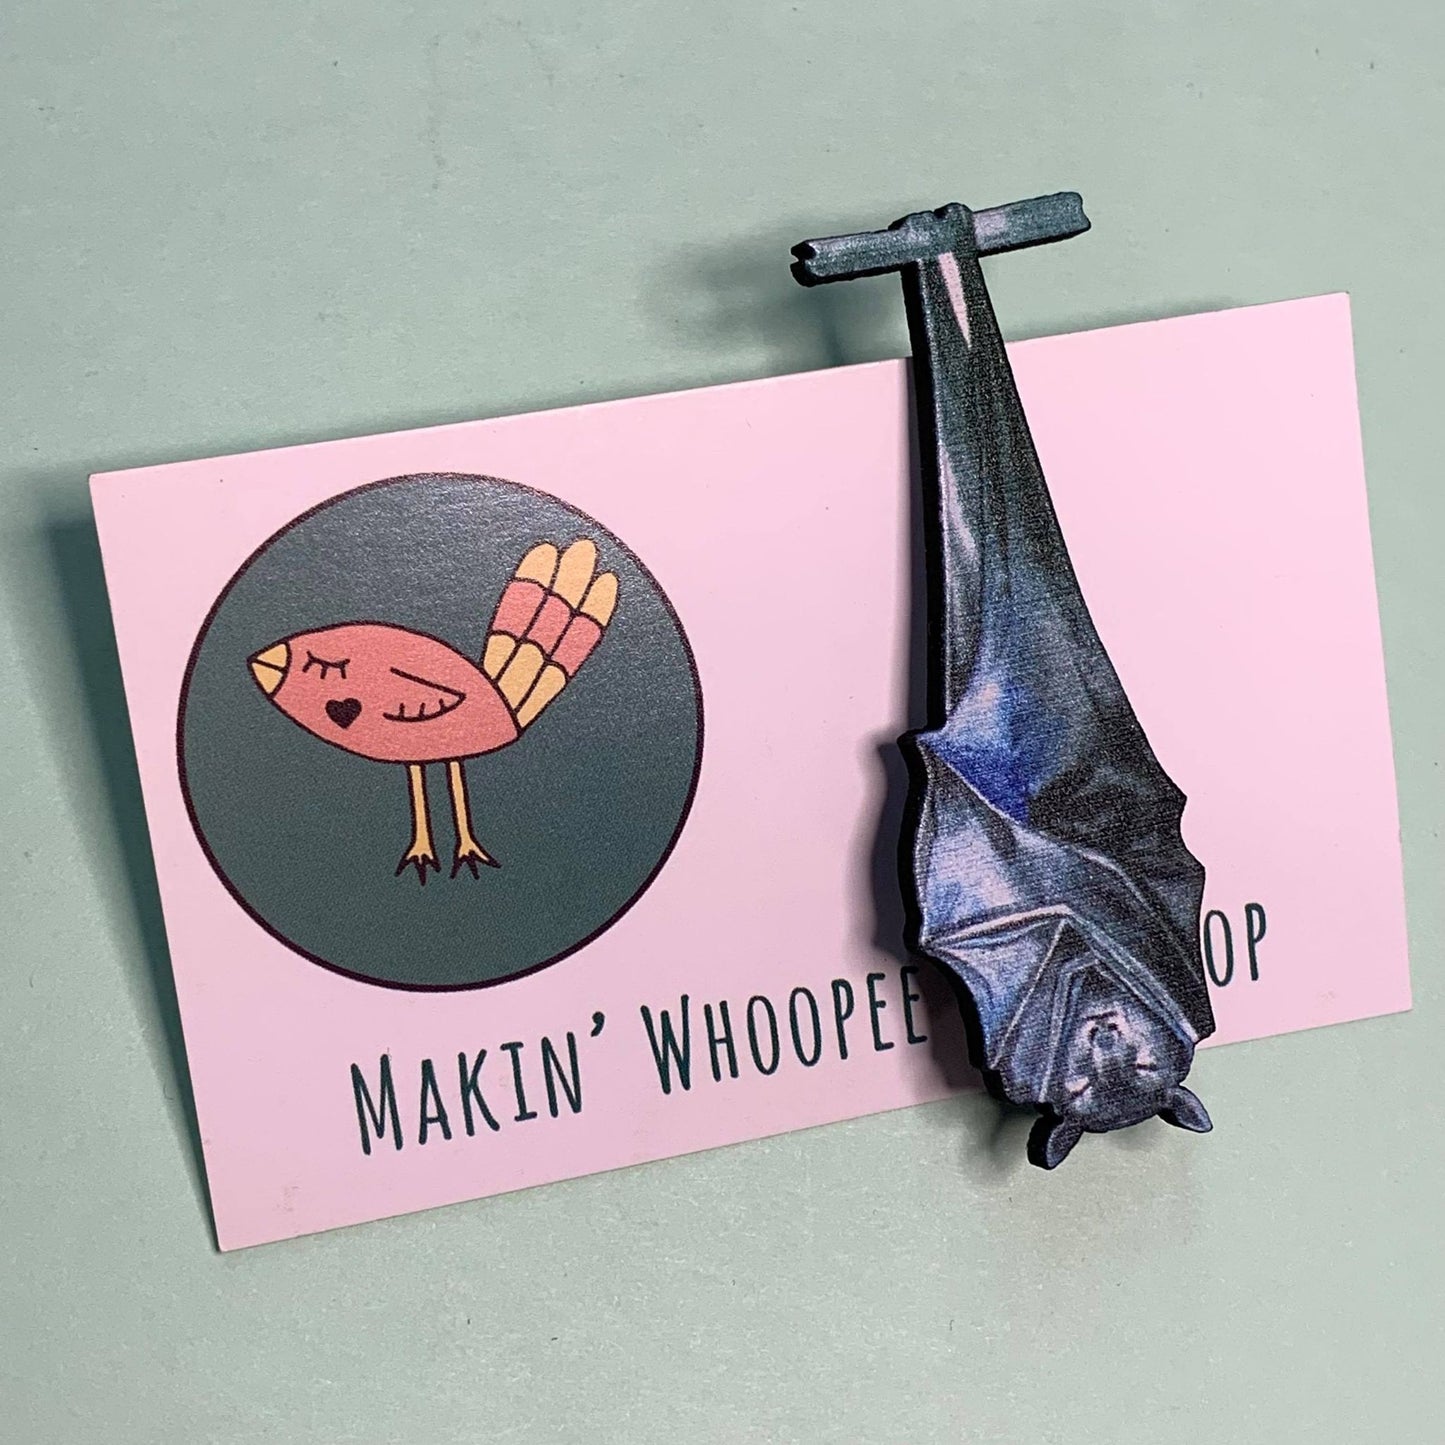 MAKIN' WHOOPEE - "Fruit Bat" Brooch